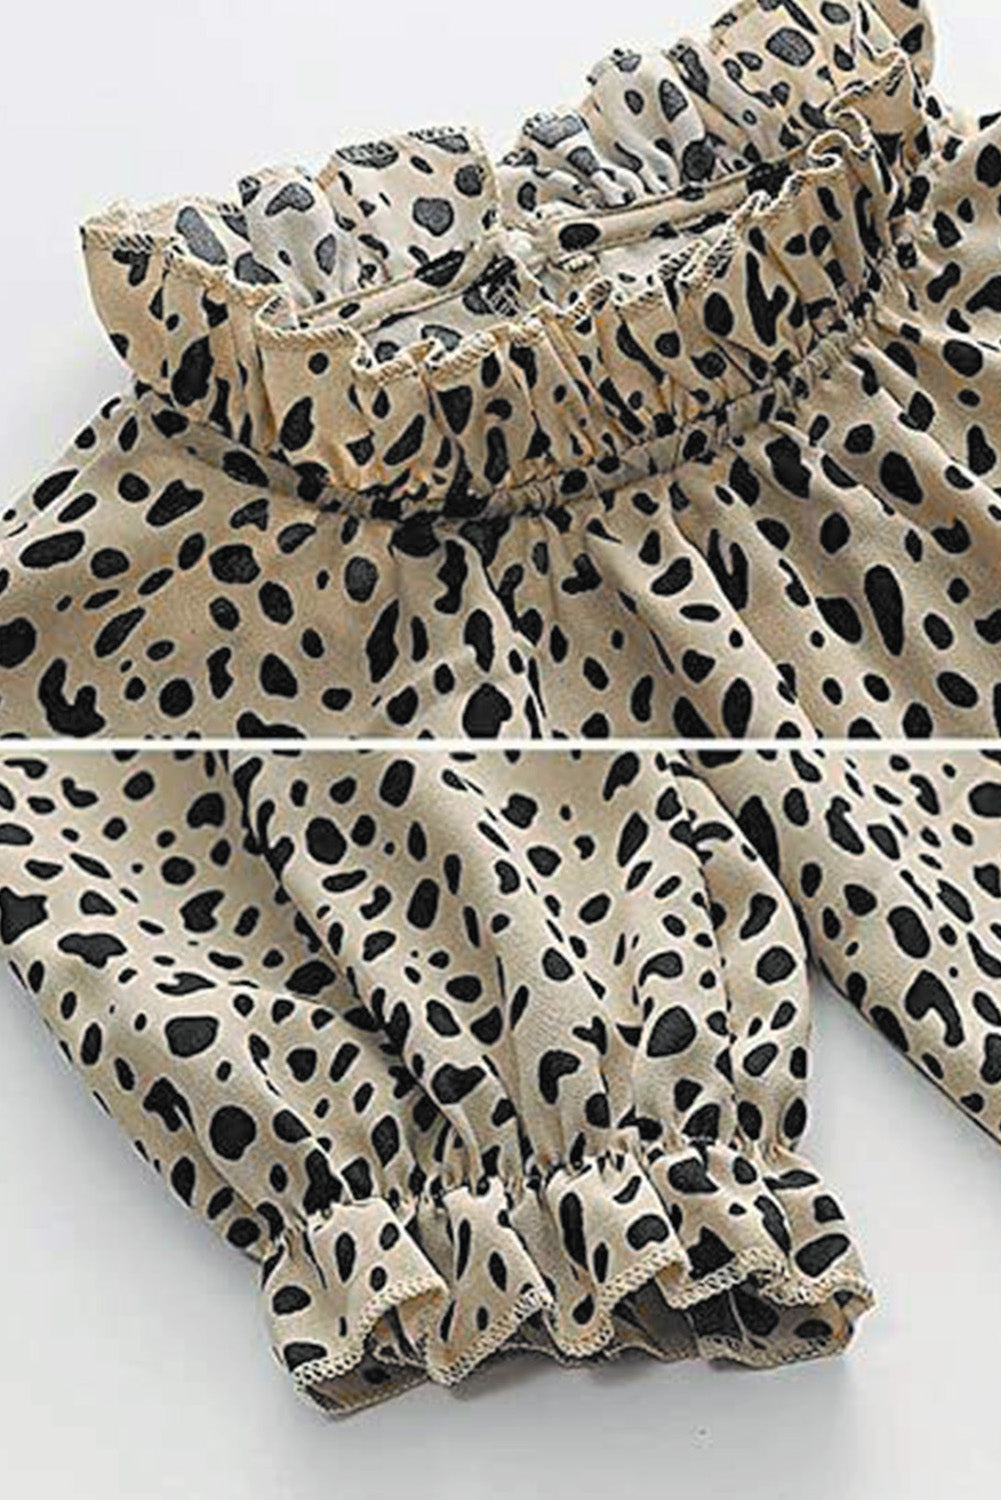 Kaki bluza s naborima i 3/4 rukava u obliku geparda